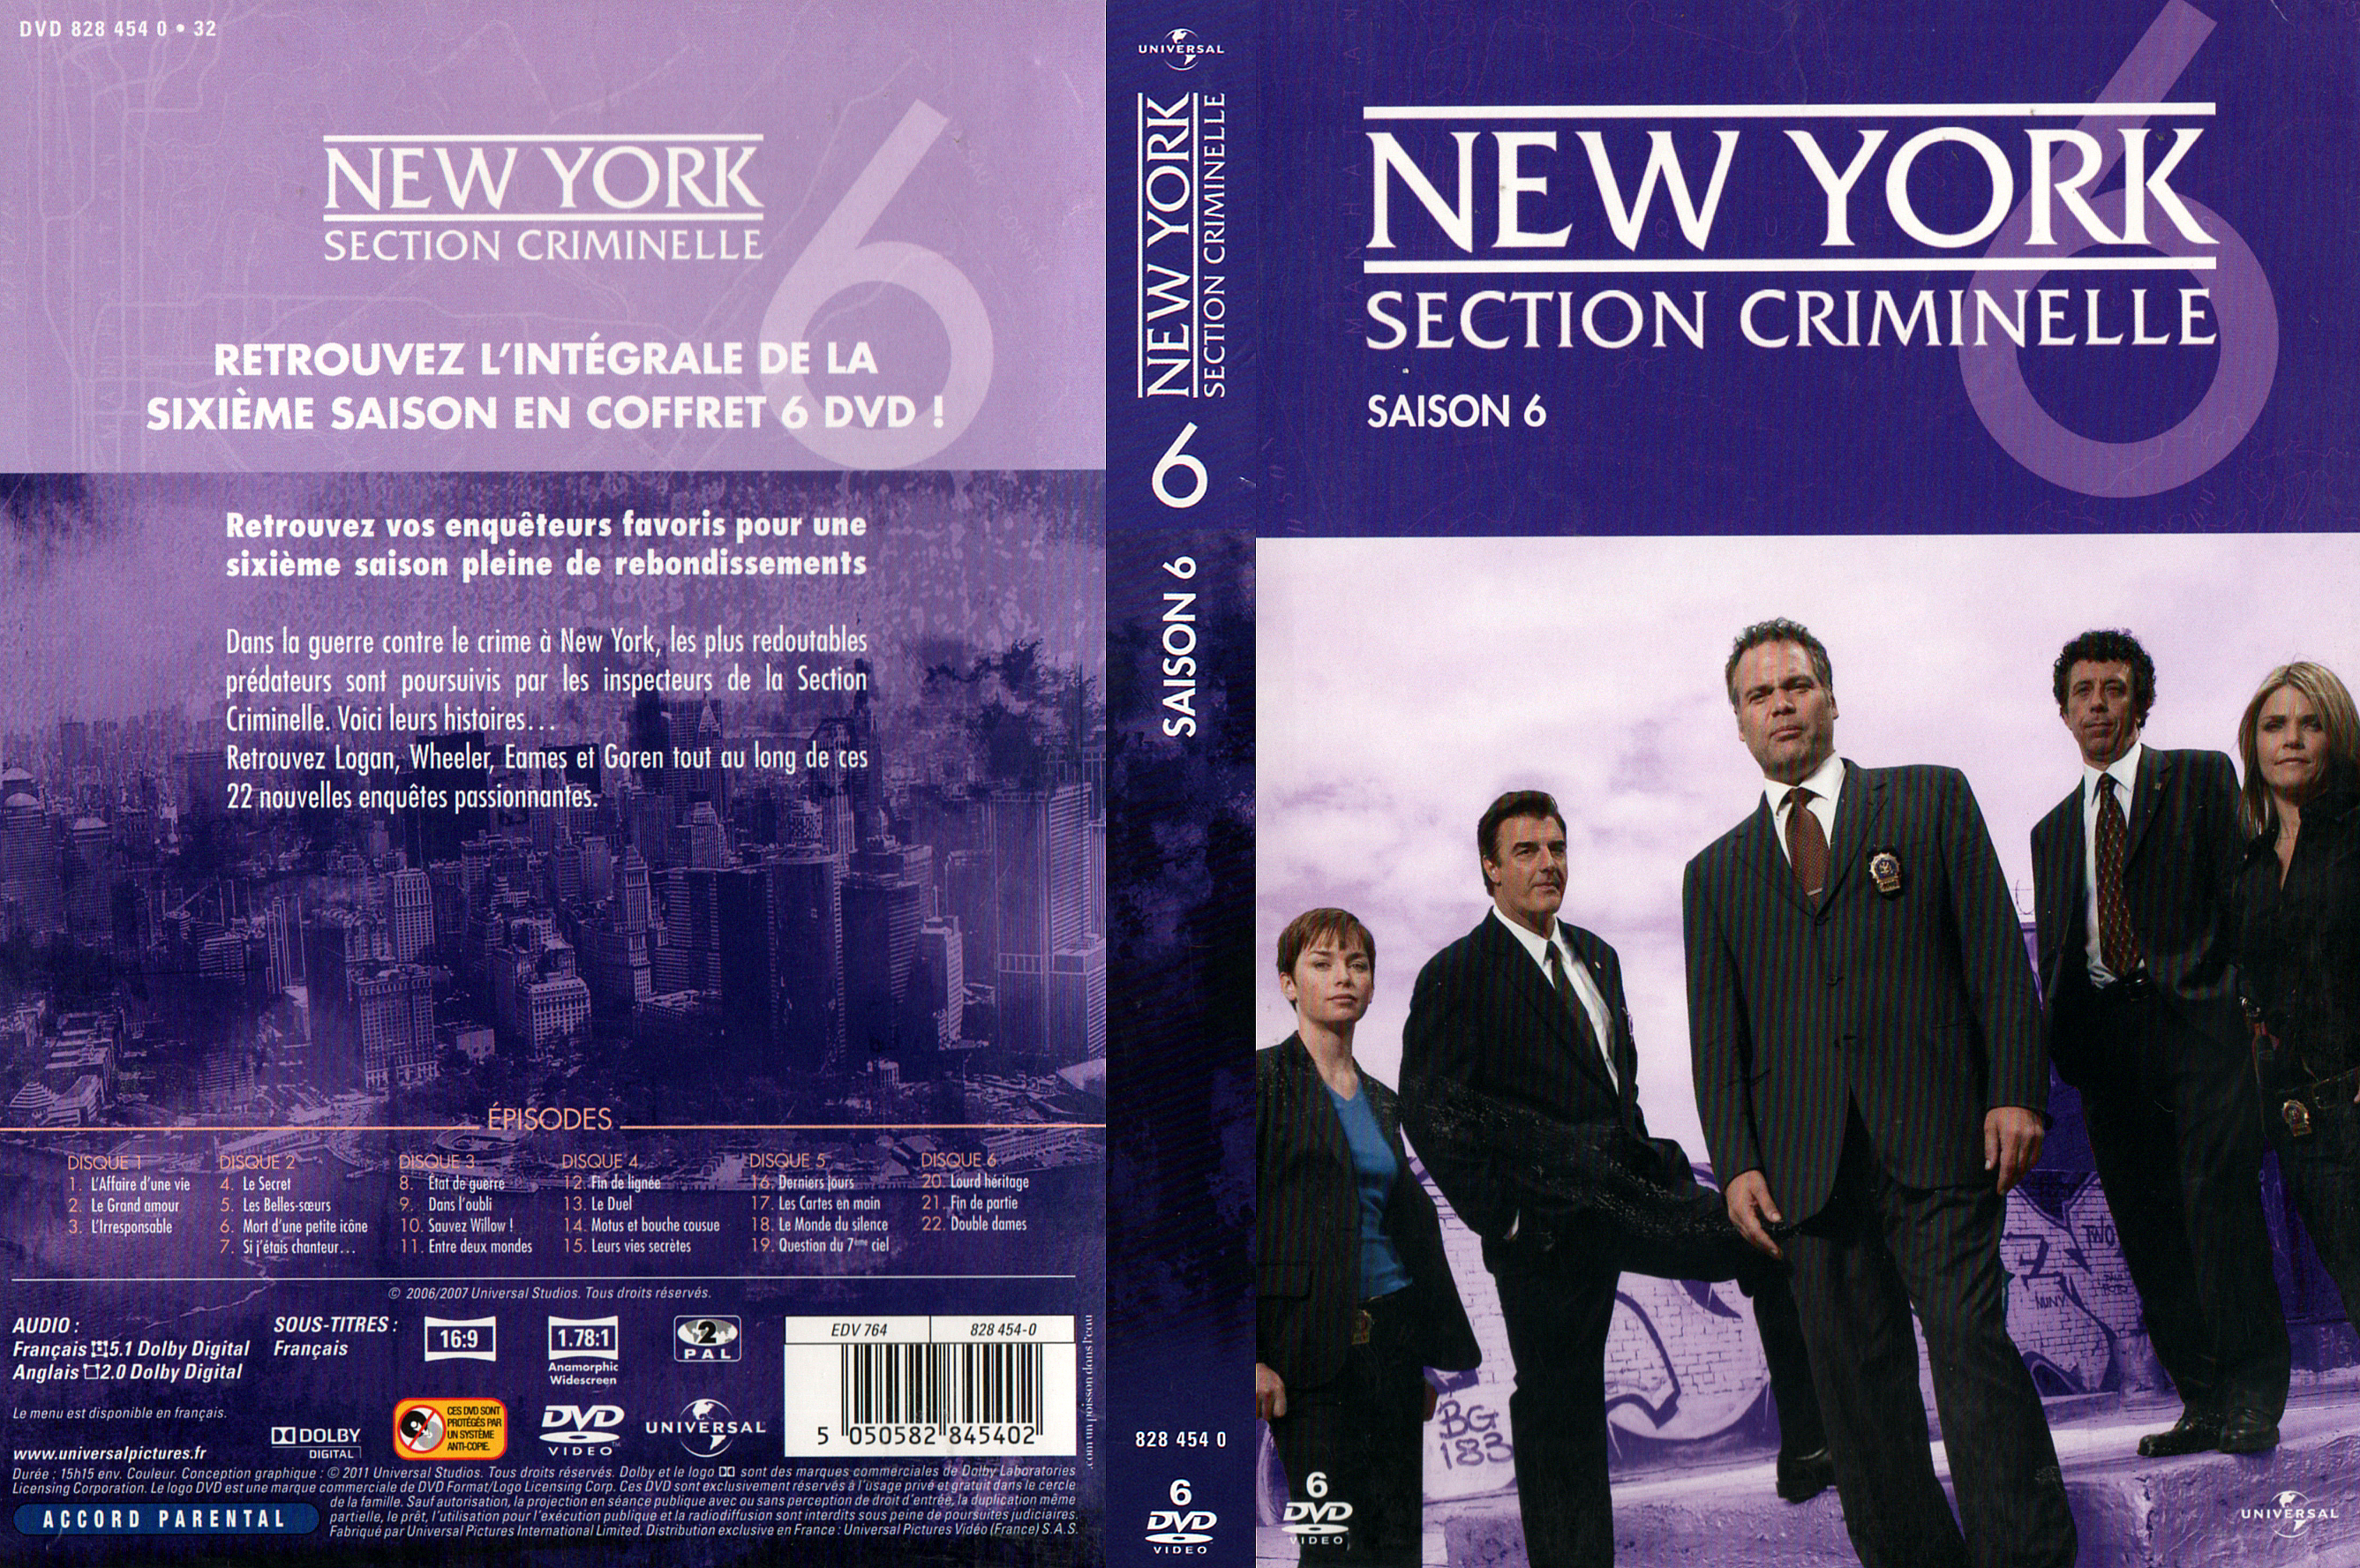 Jaquette DVD New york section criminelle saison 6